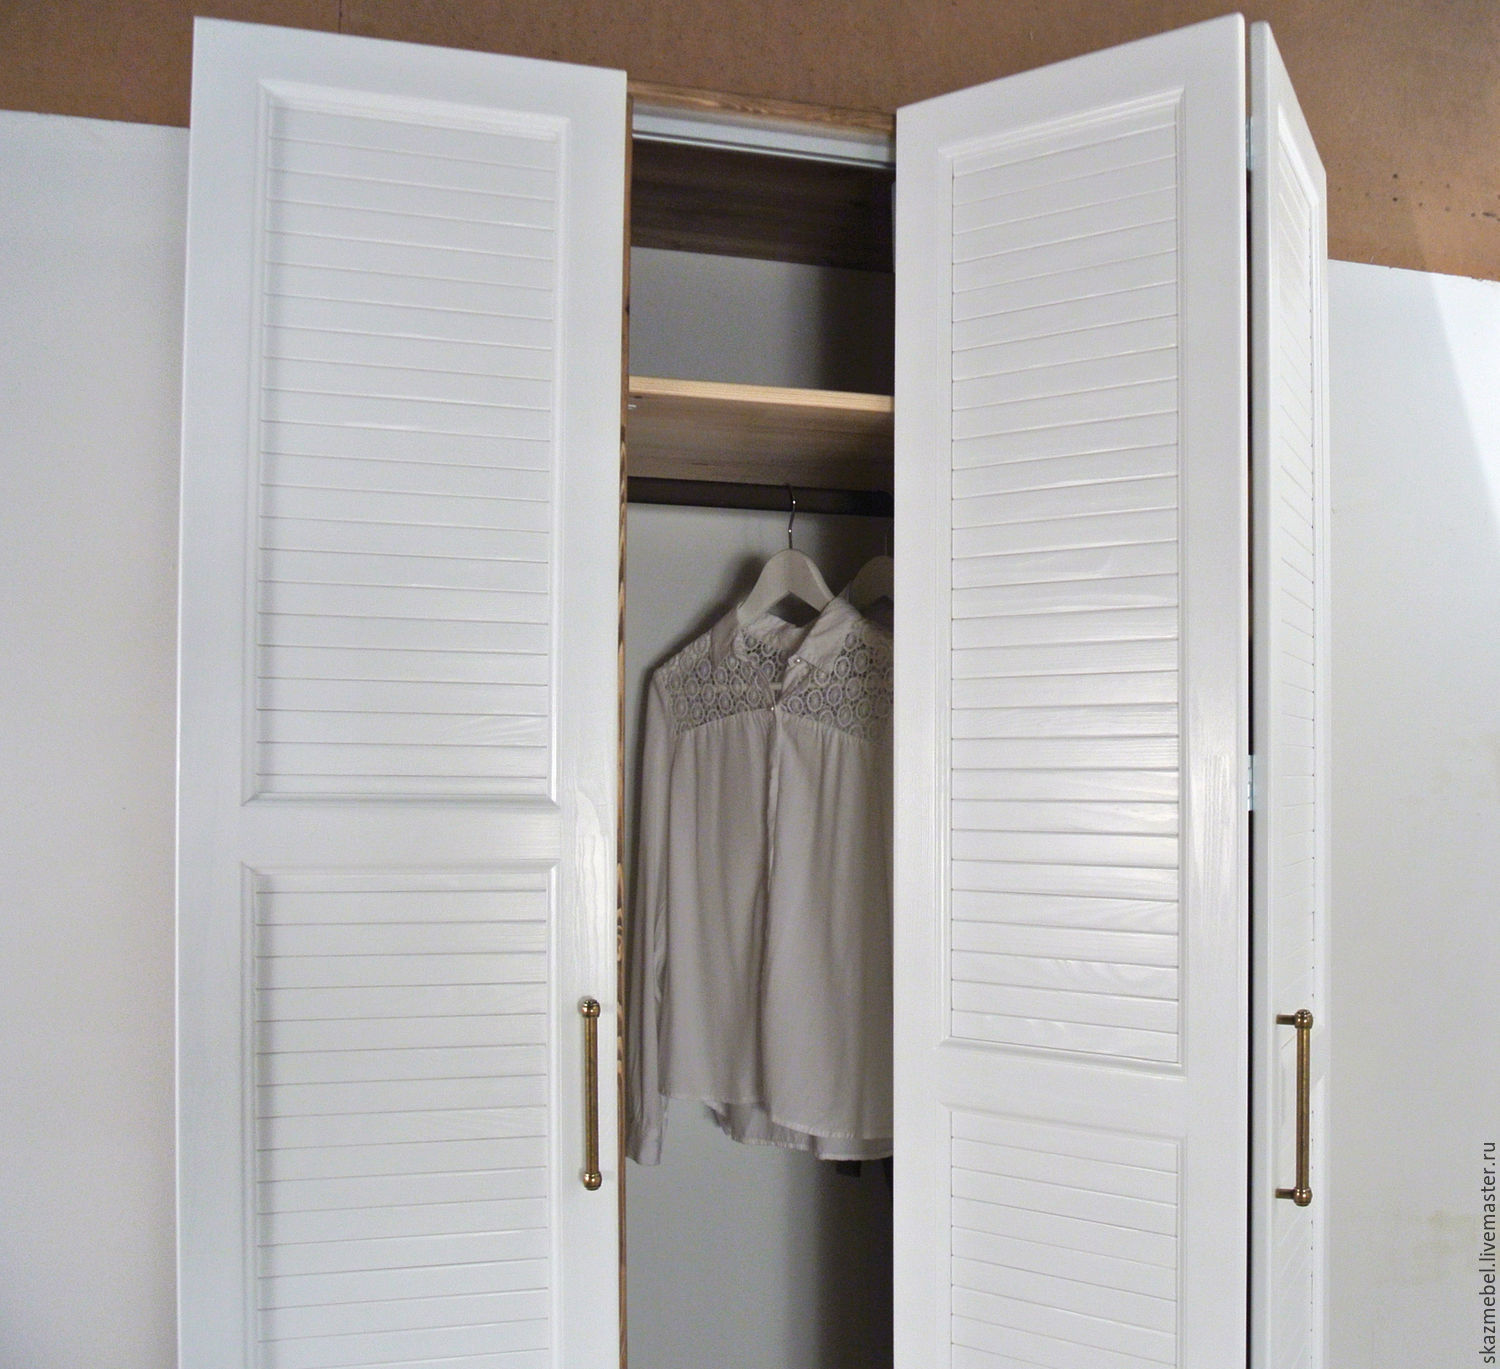 Встроенные шкафы гармошки на заказ - фото и цены шкафов со складными дверями